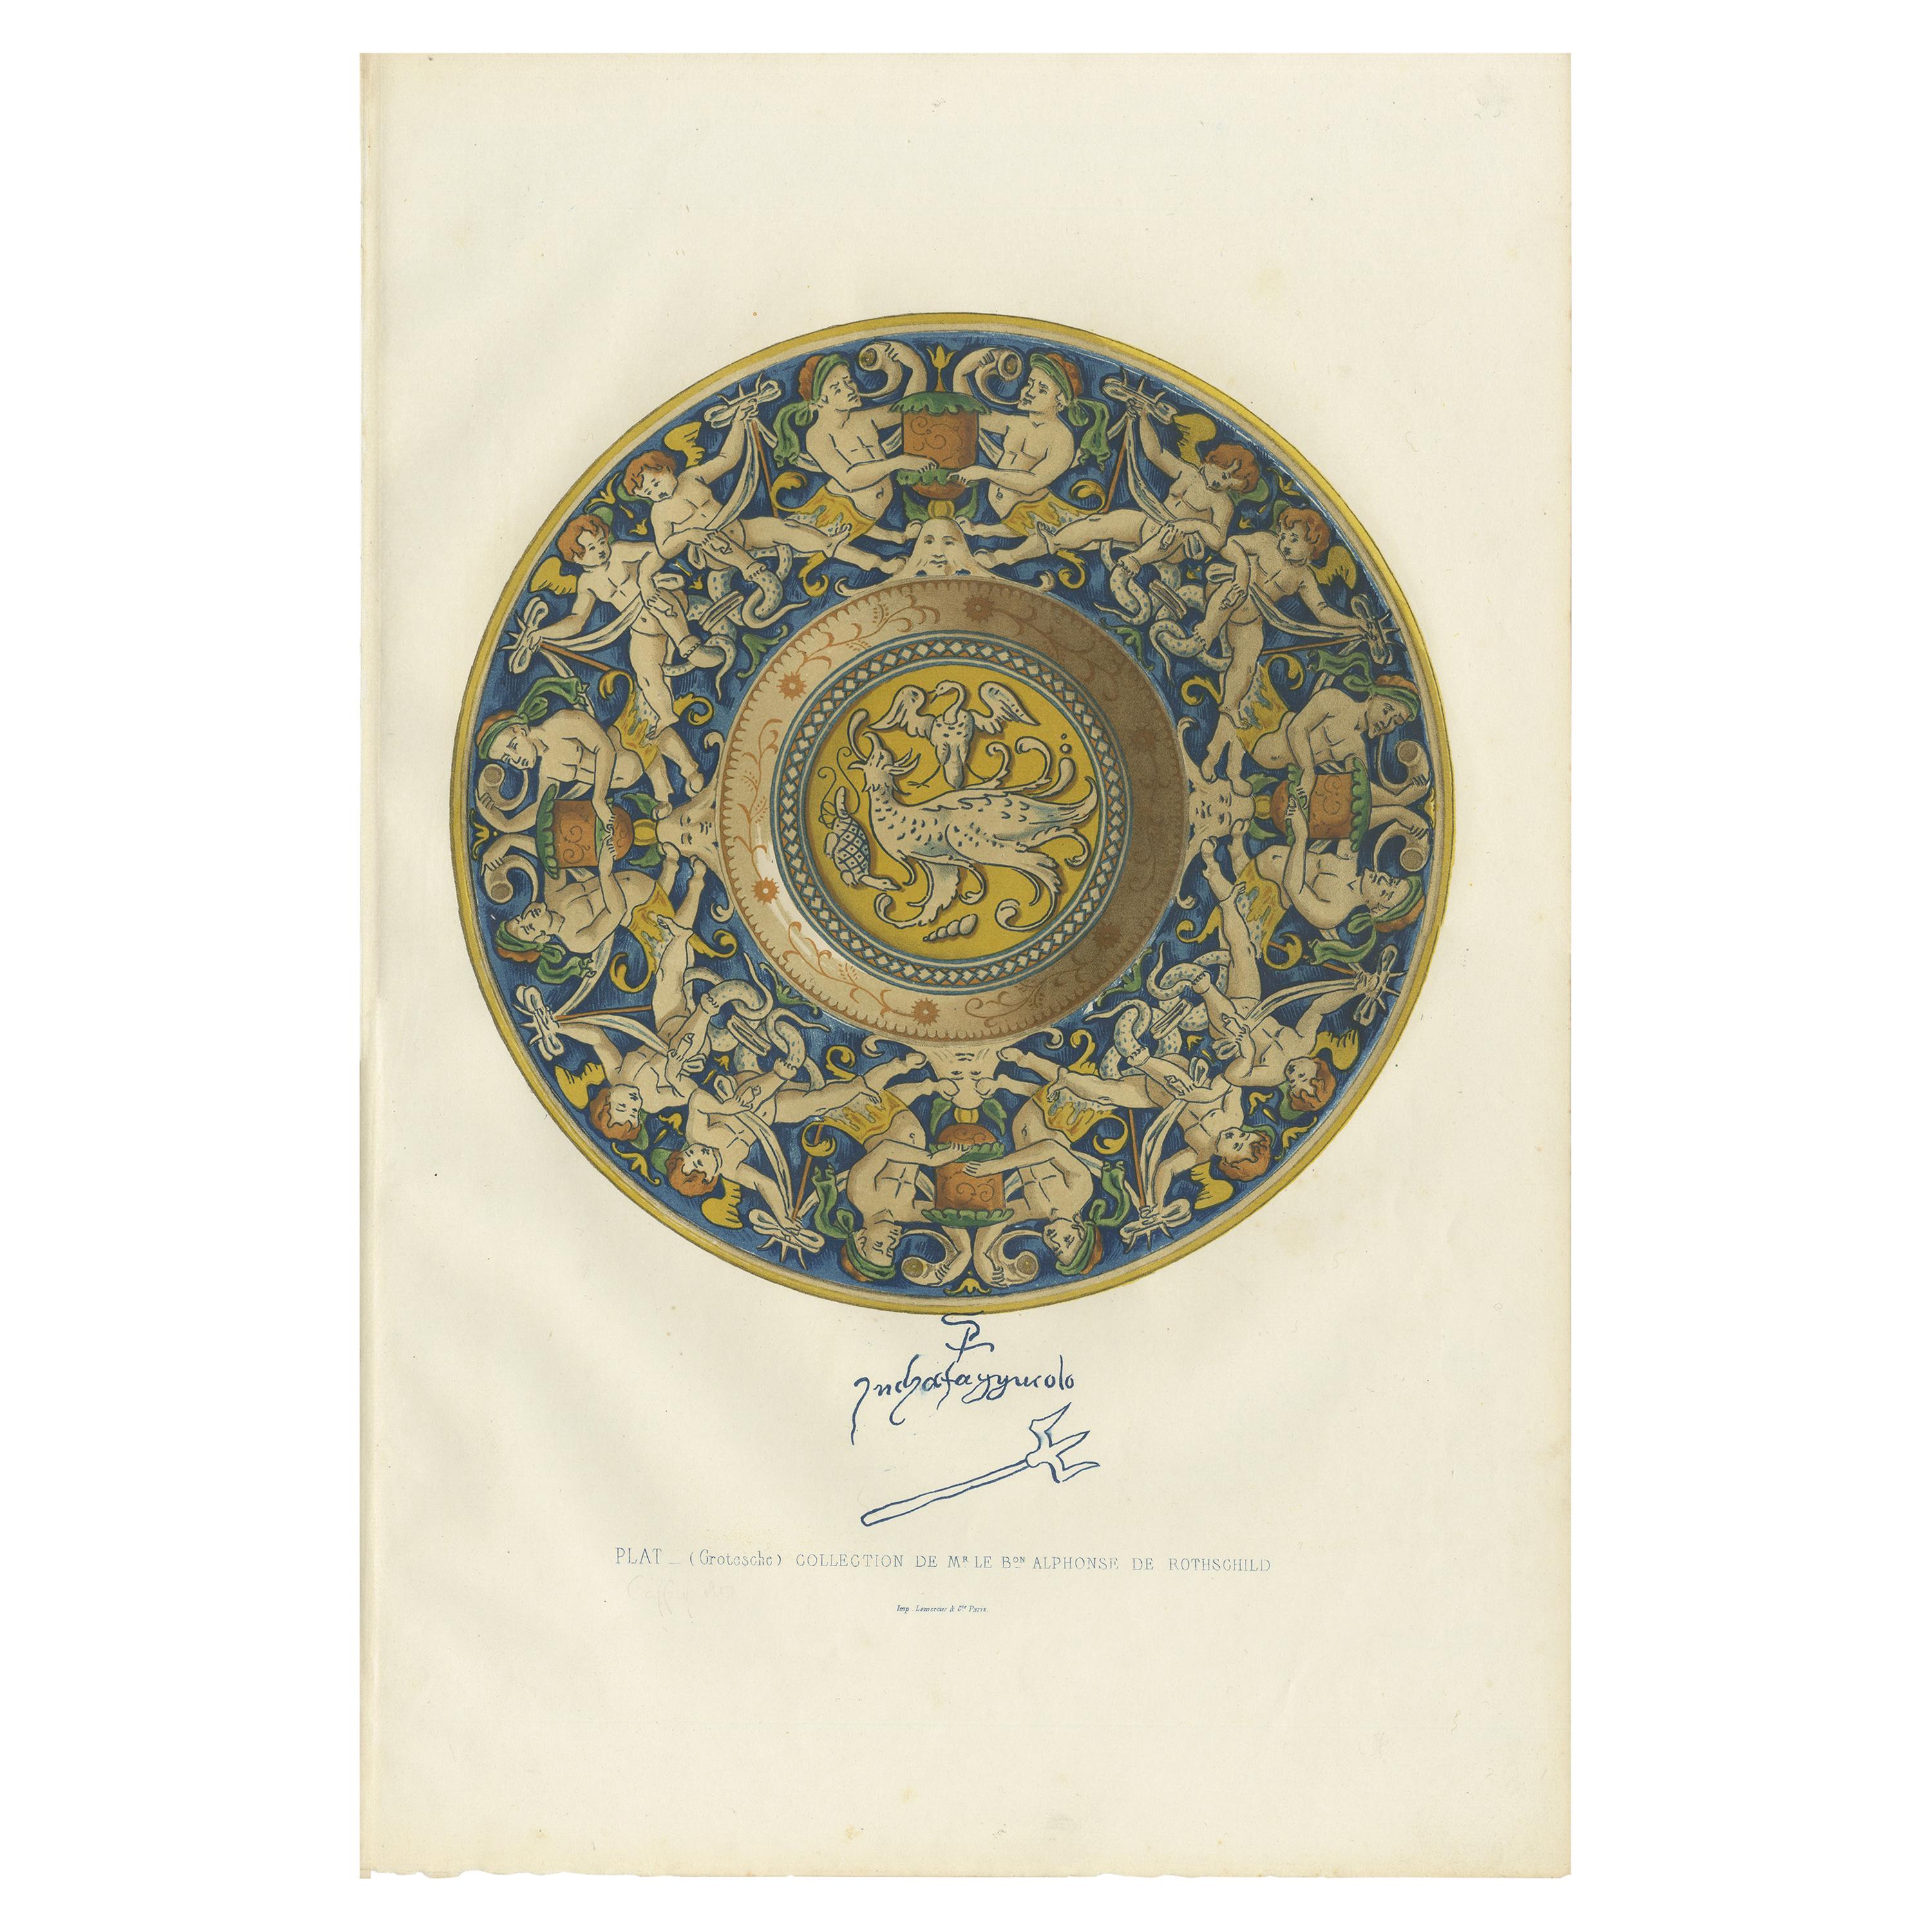 Antique Print of a Plate of Mr. le Bon Alphonse de Rothschild by Delange '1869'